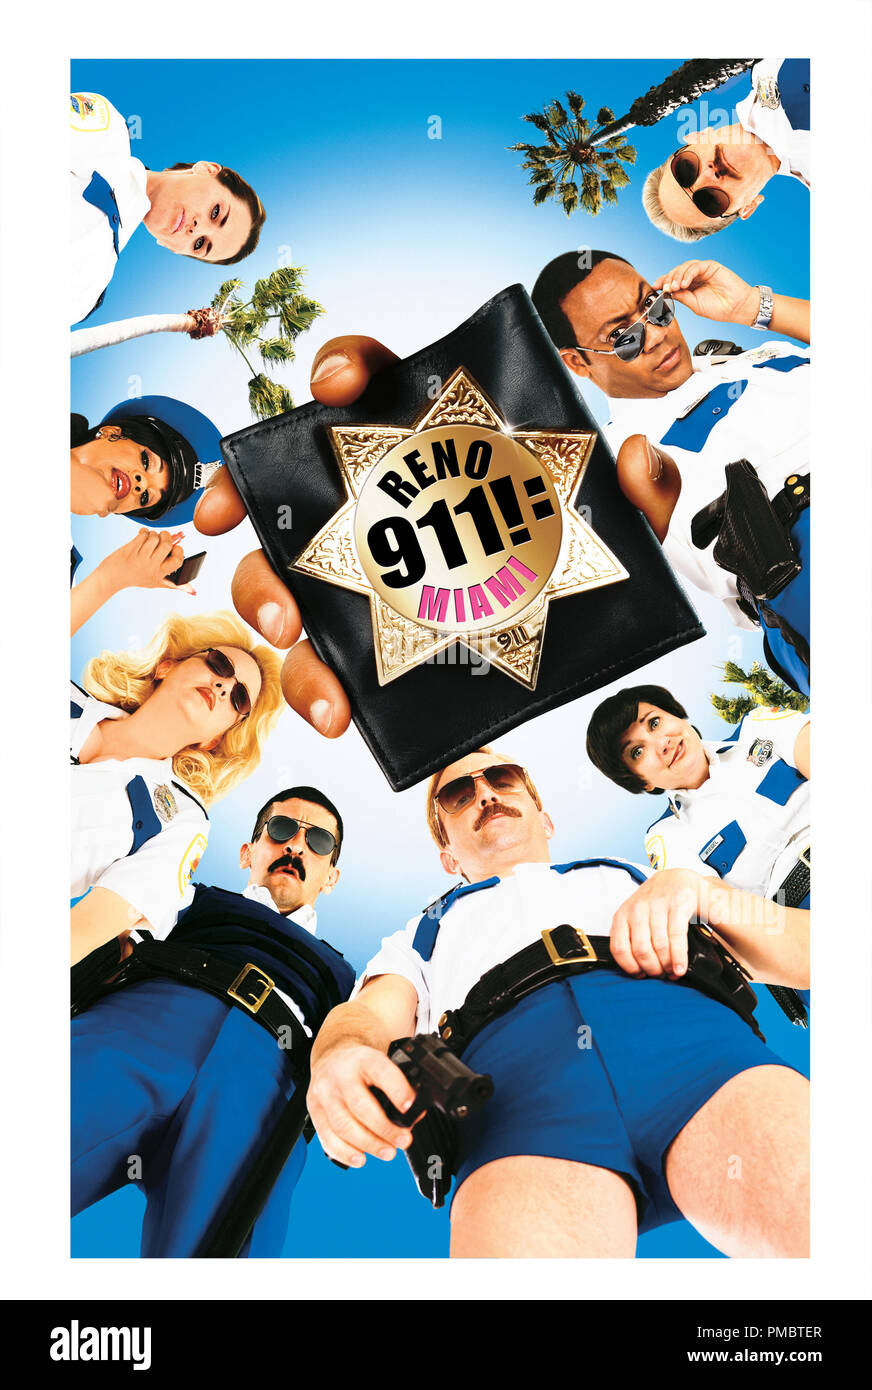 RENO 911 ! : MIAMI - Poster Banque D'Images